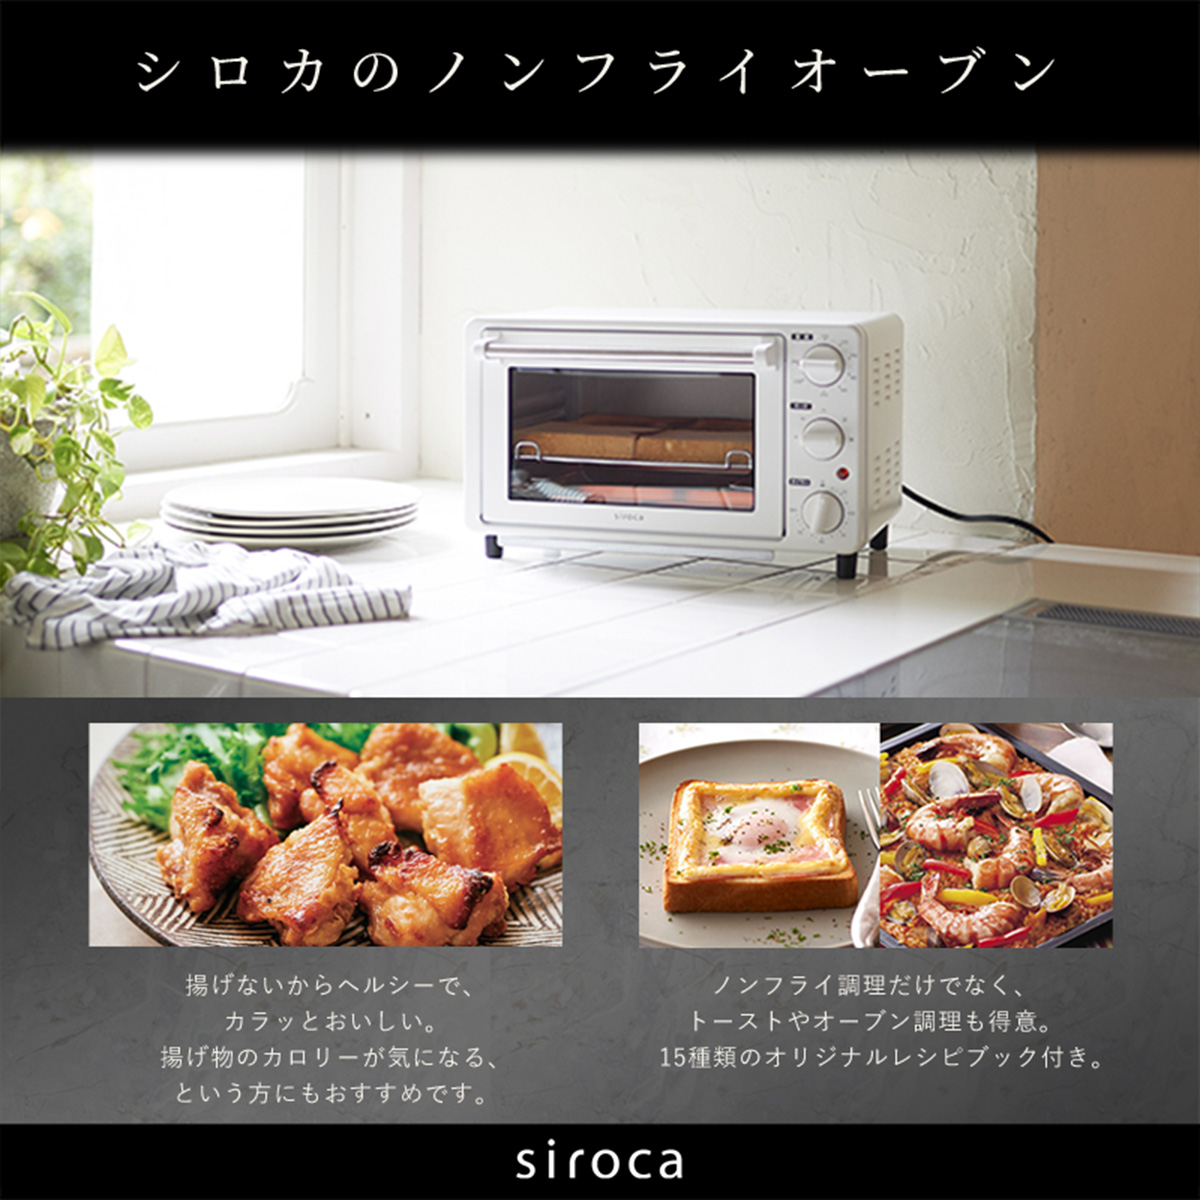 ひかりＴＶショッピング siroca ノンフライオーブン ノンフライ調理 16メニュー オーブン調理 トースト コンベクション コンパクト レッド  ST-4N231(R)｜シロカ